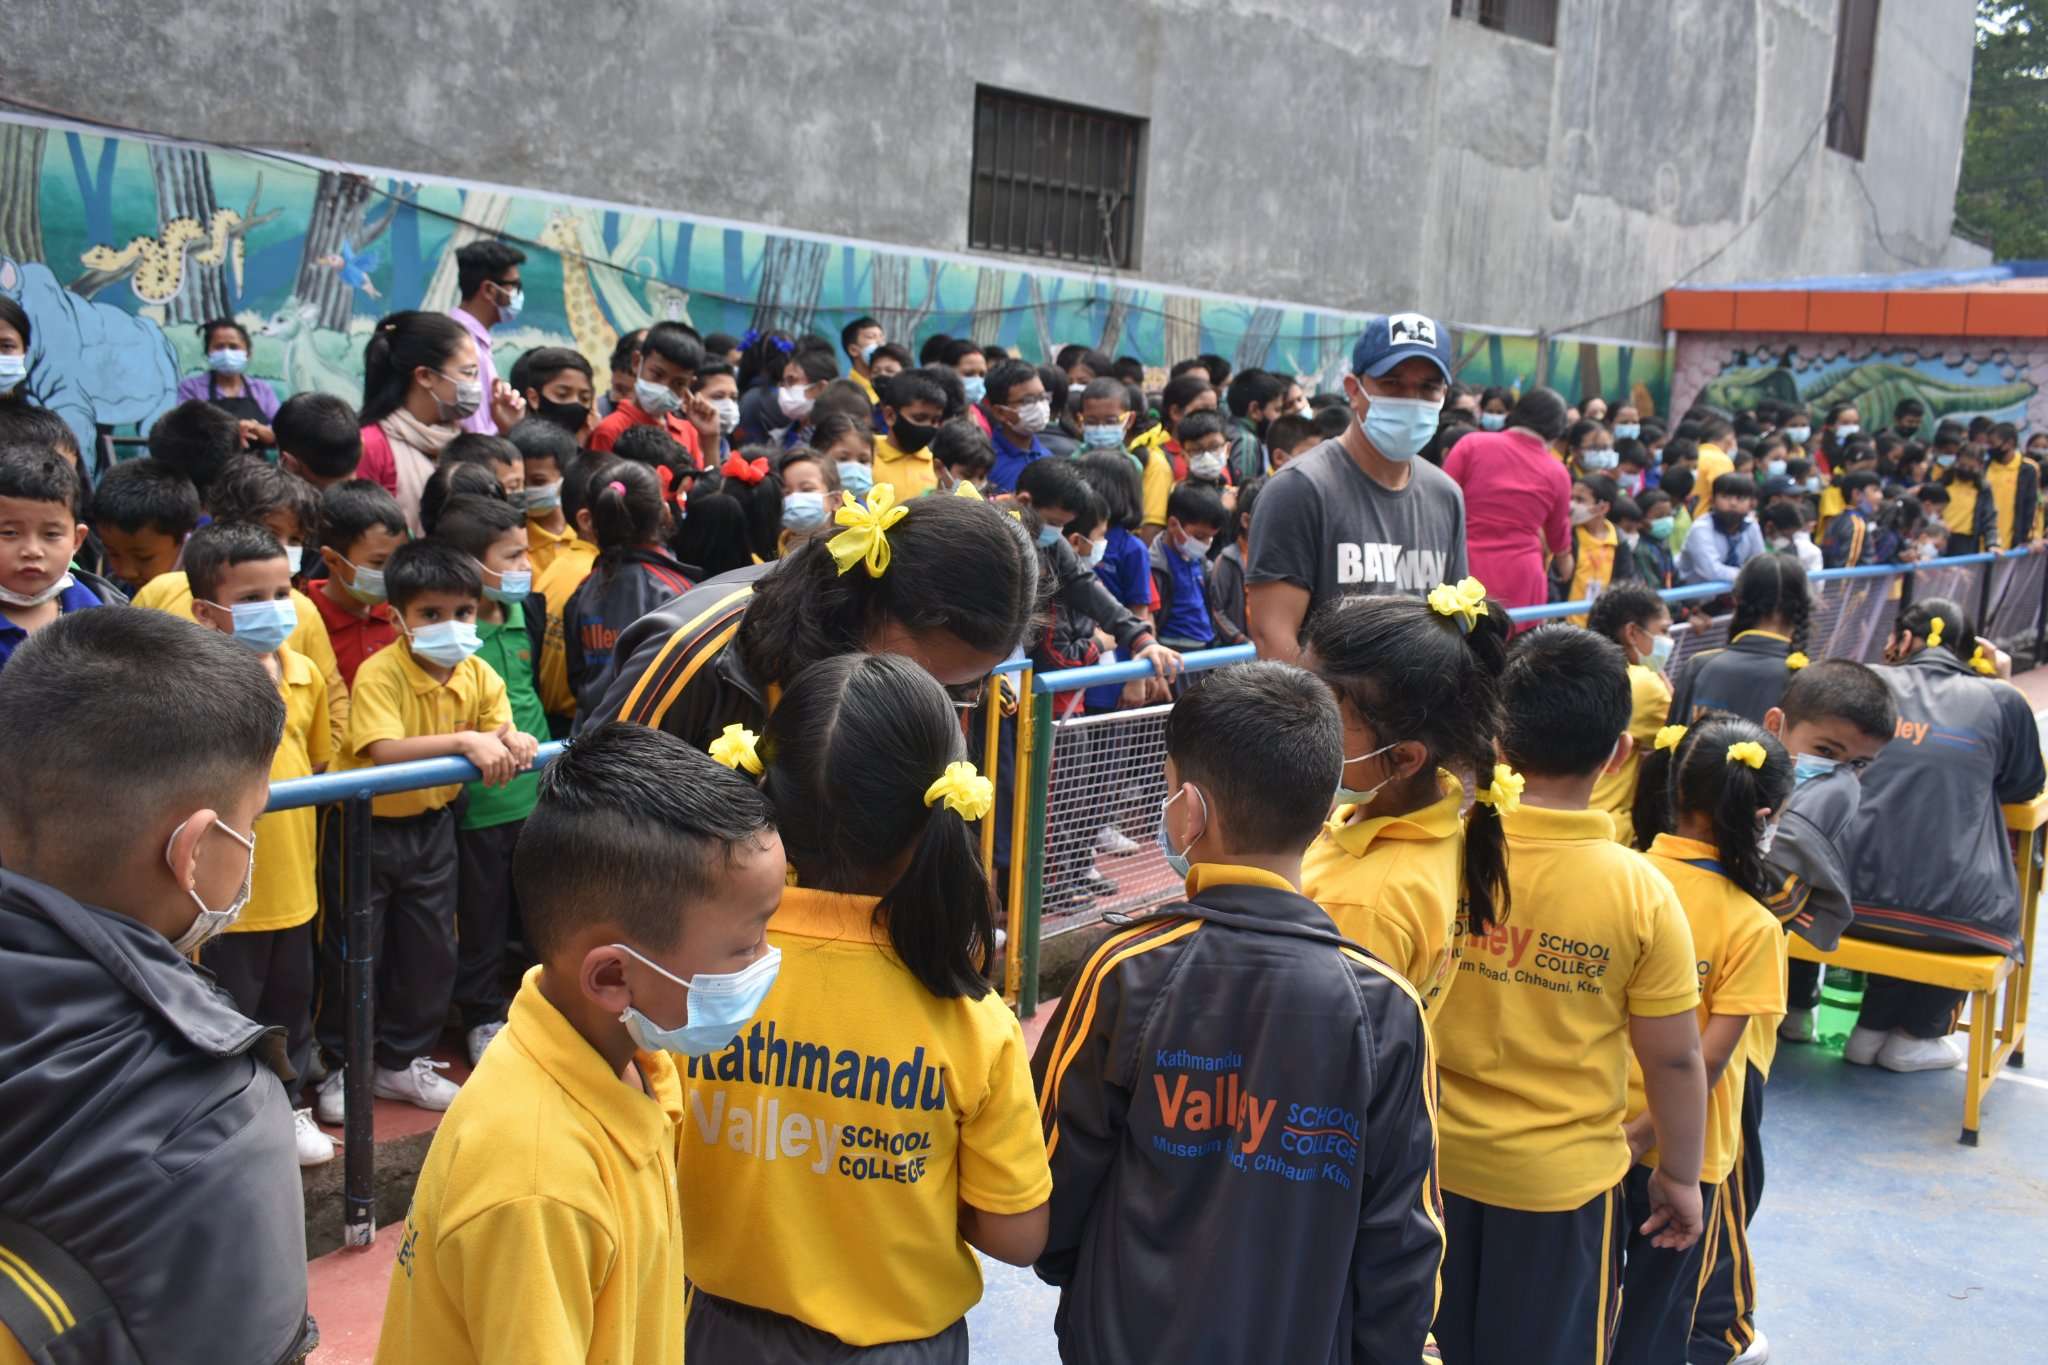 Kathmandu Valley School